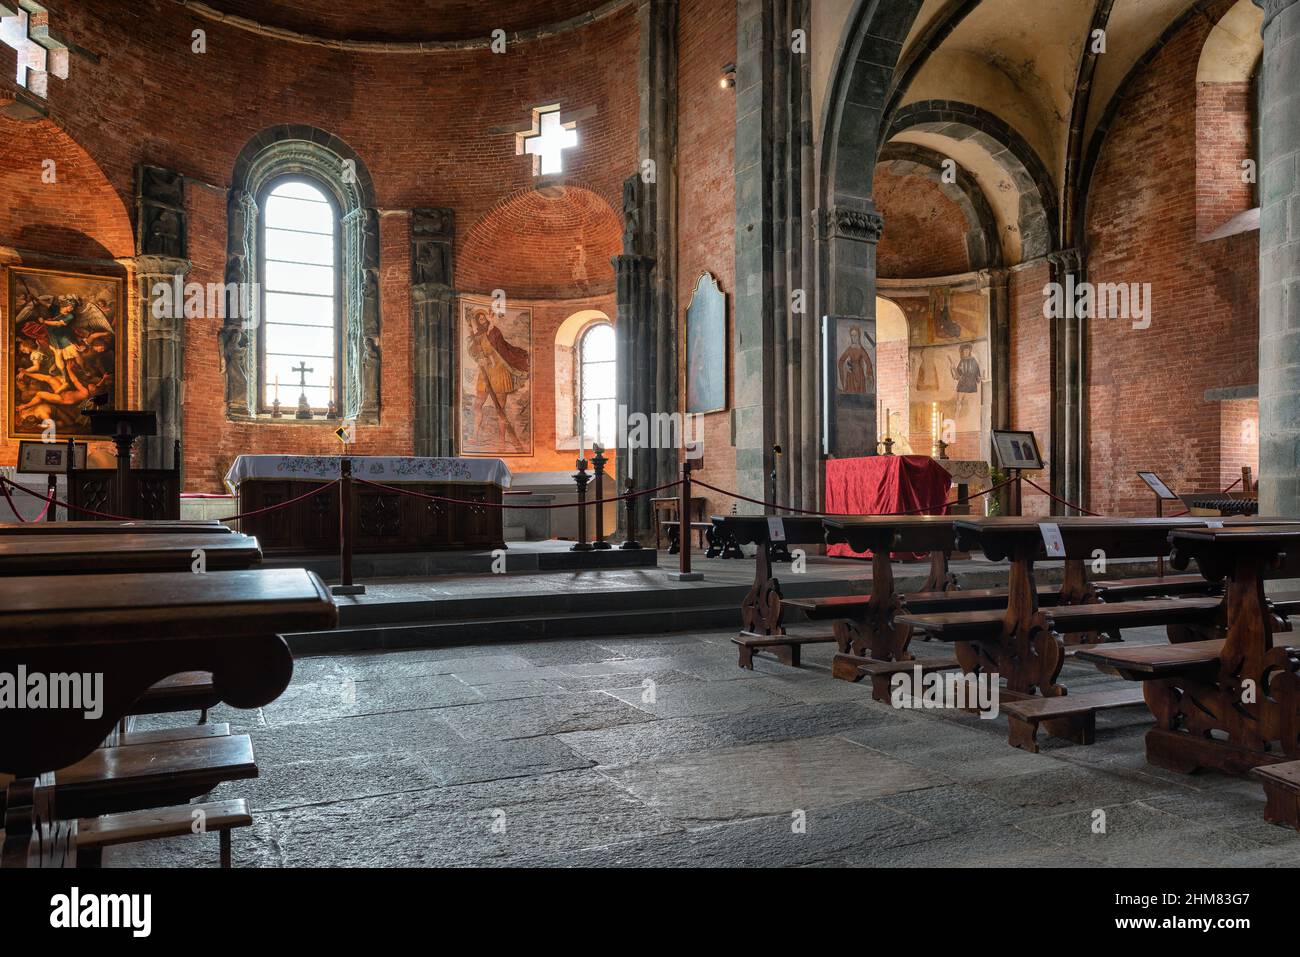 Vue intérieure de Sacra di San Michele, magnifique abbaye antique de Val di Susa. Province de Turin, région du Piémont, Italie. Banque D'Images